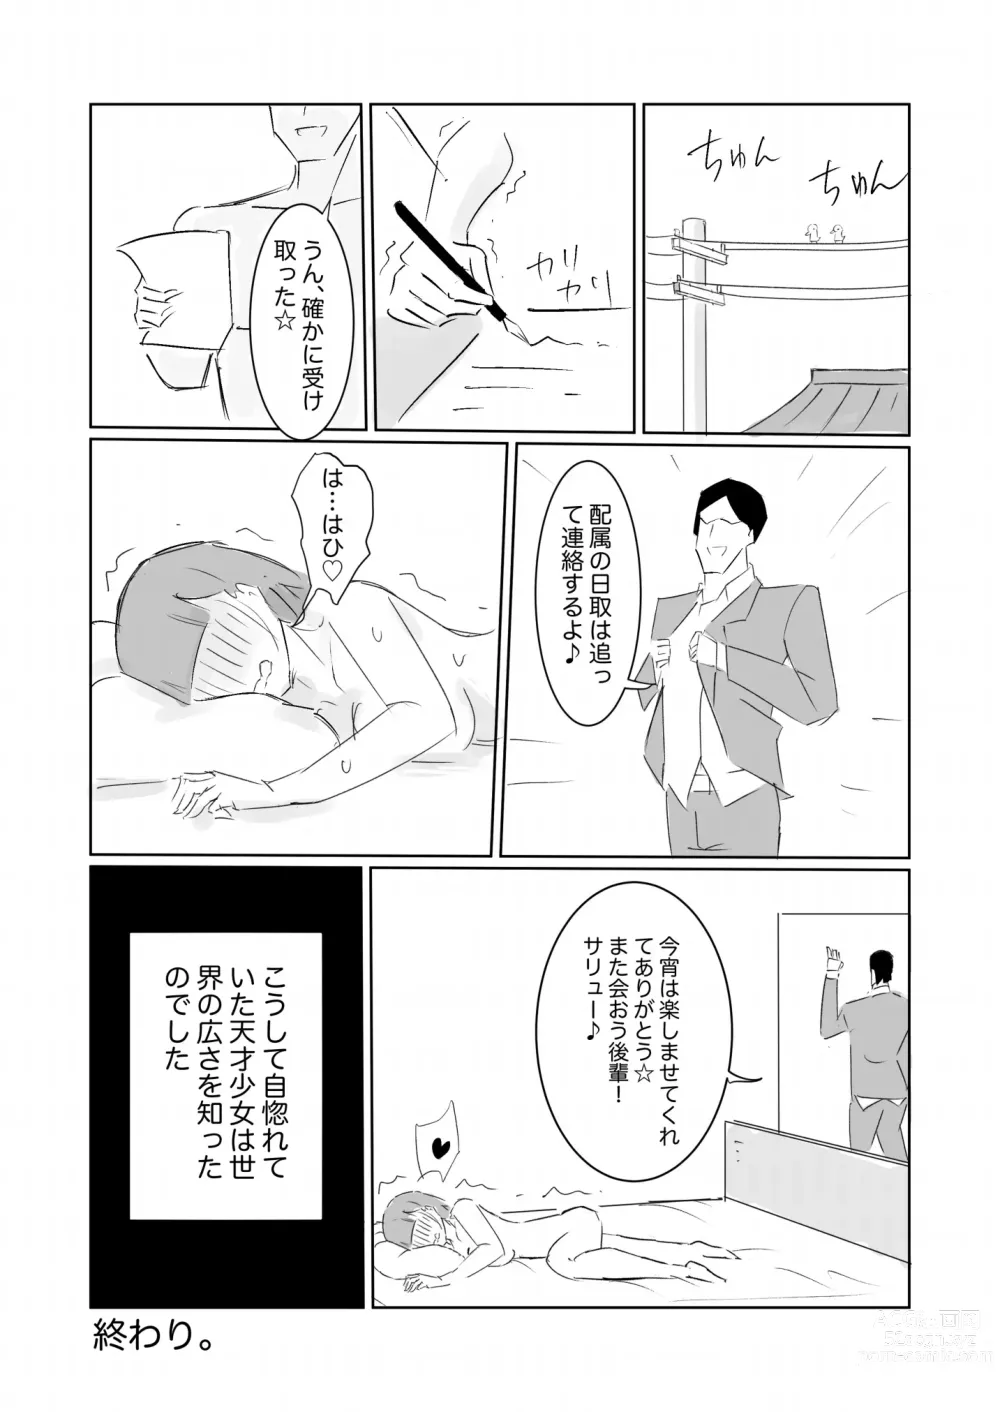 Page 45 of doujinshi Unuboreta Tensai Taima Shojo, Sekai no Hiro-sa o Shiru.